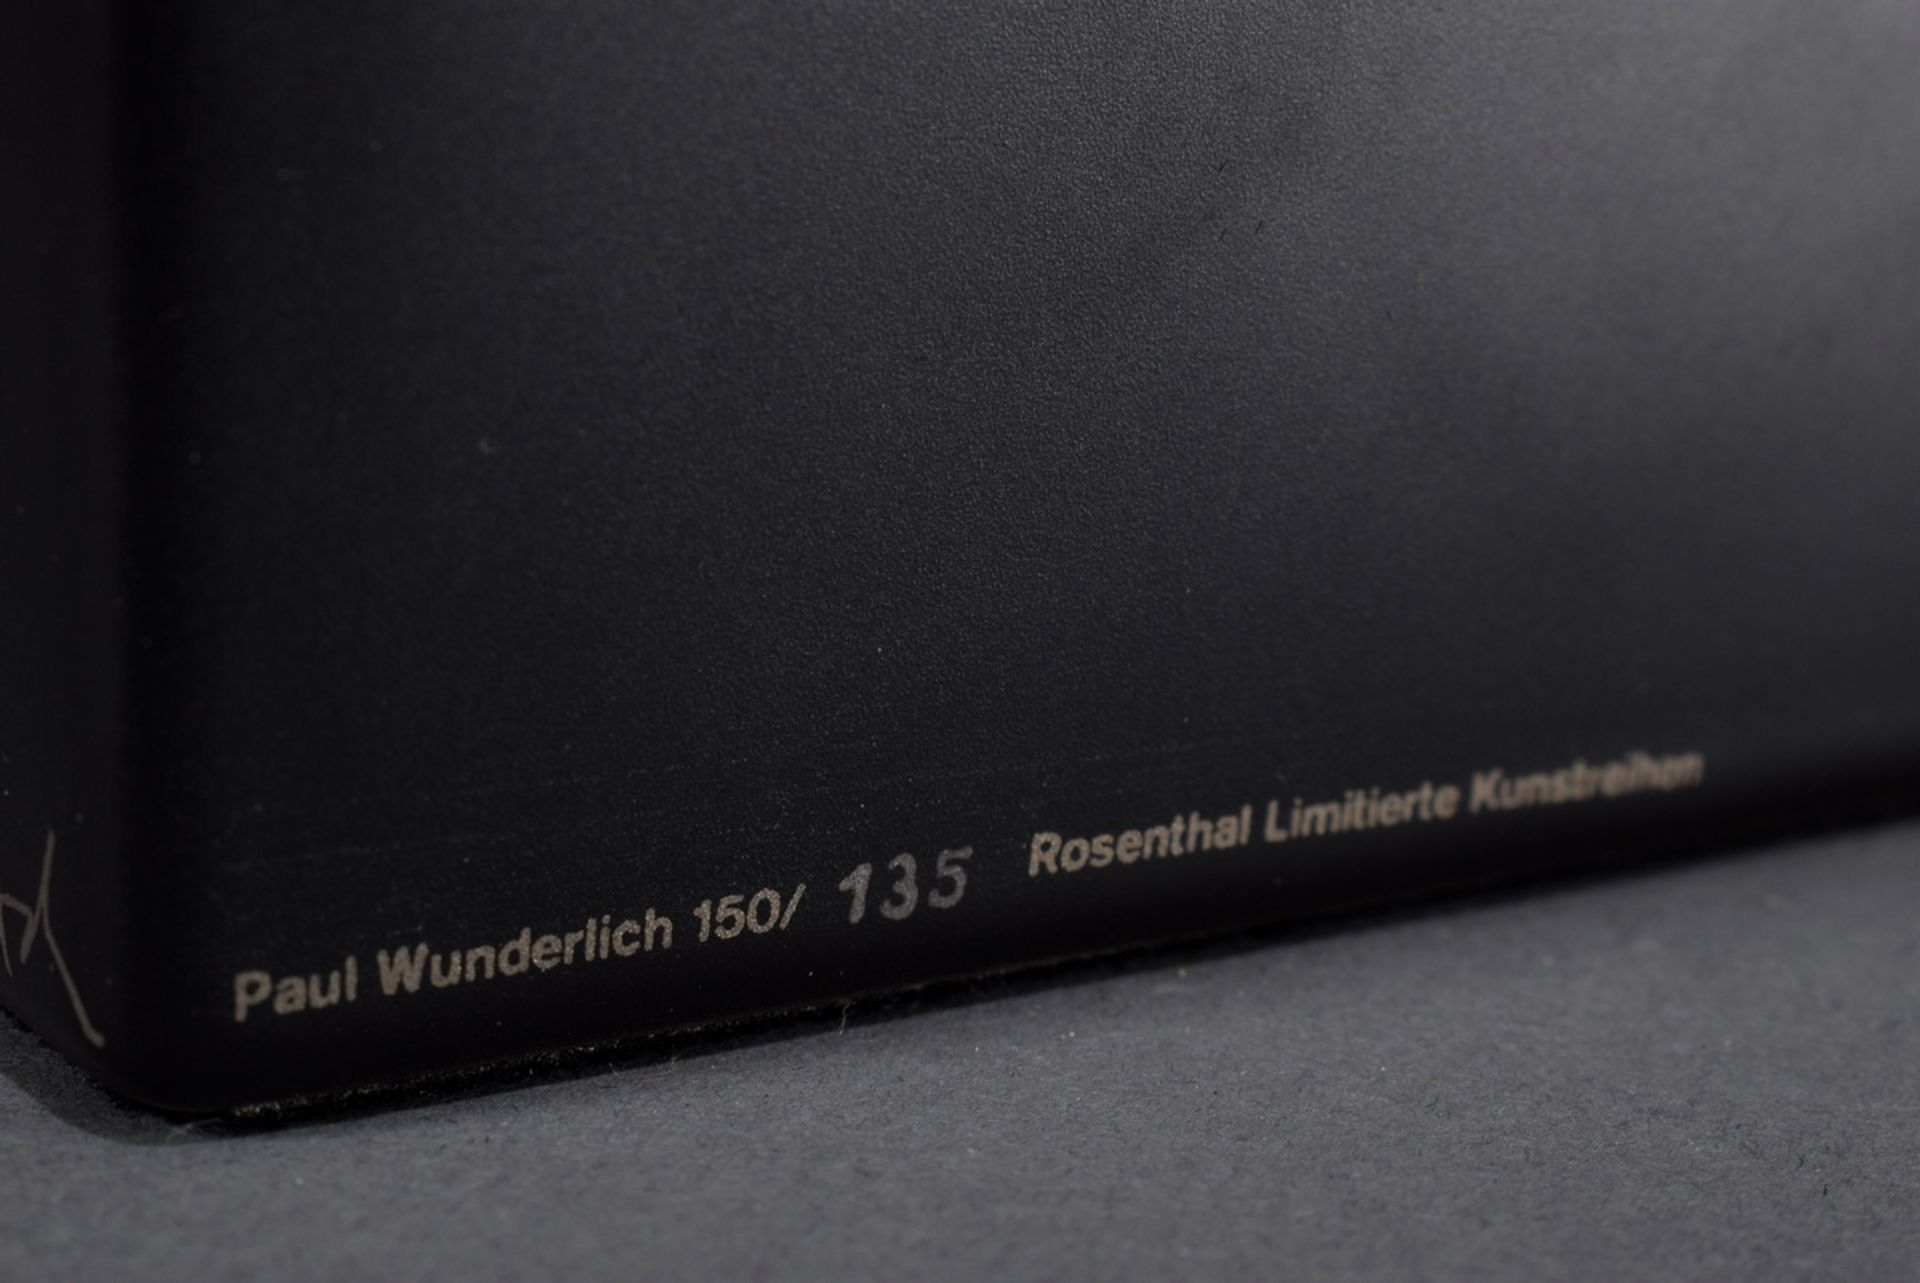 Wunderlich, Paul (1927-2010) "Ellipsoid" 1978, Rosenthal limitierte Kunstreihe, Porzellan/vergoldet - Bild 6 aus 9